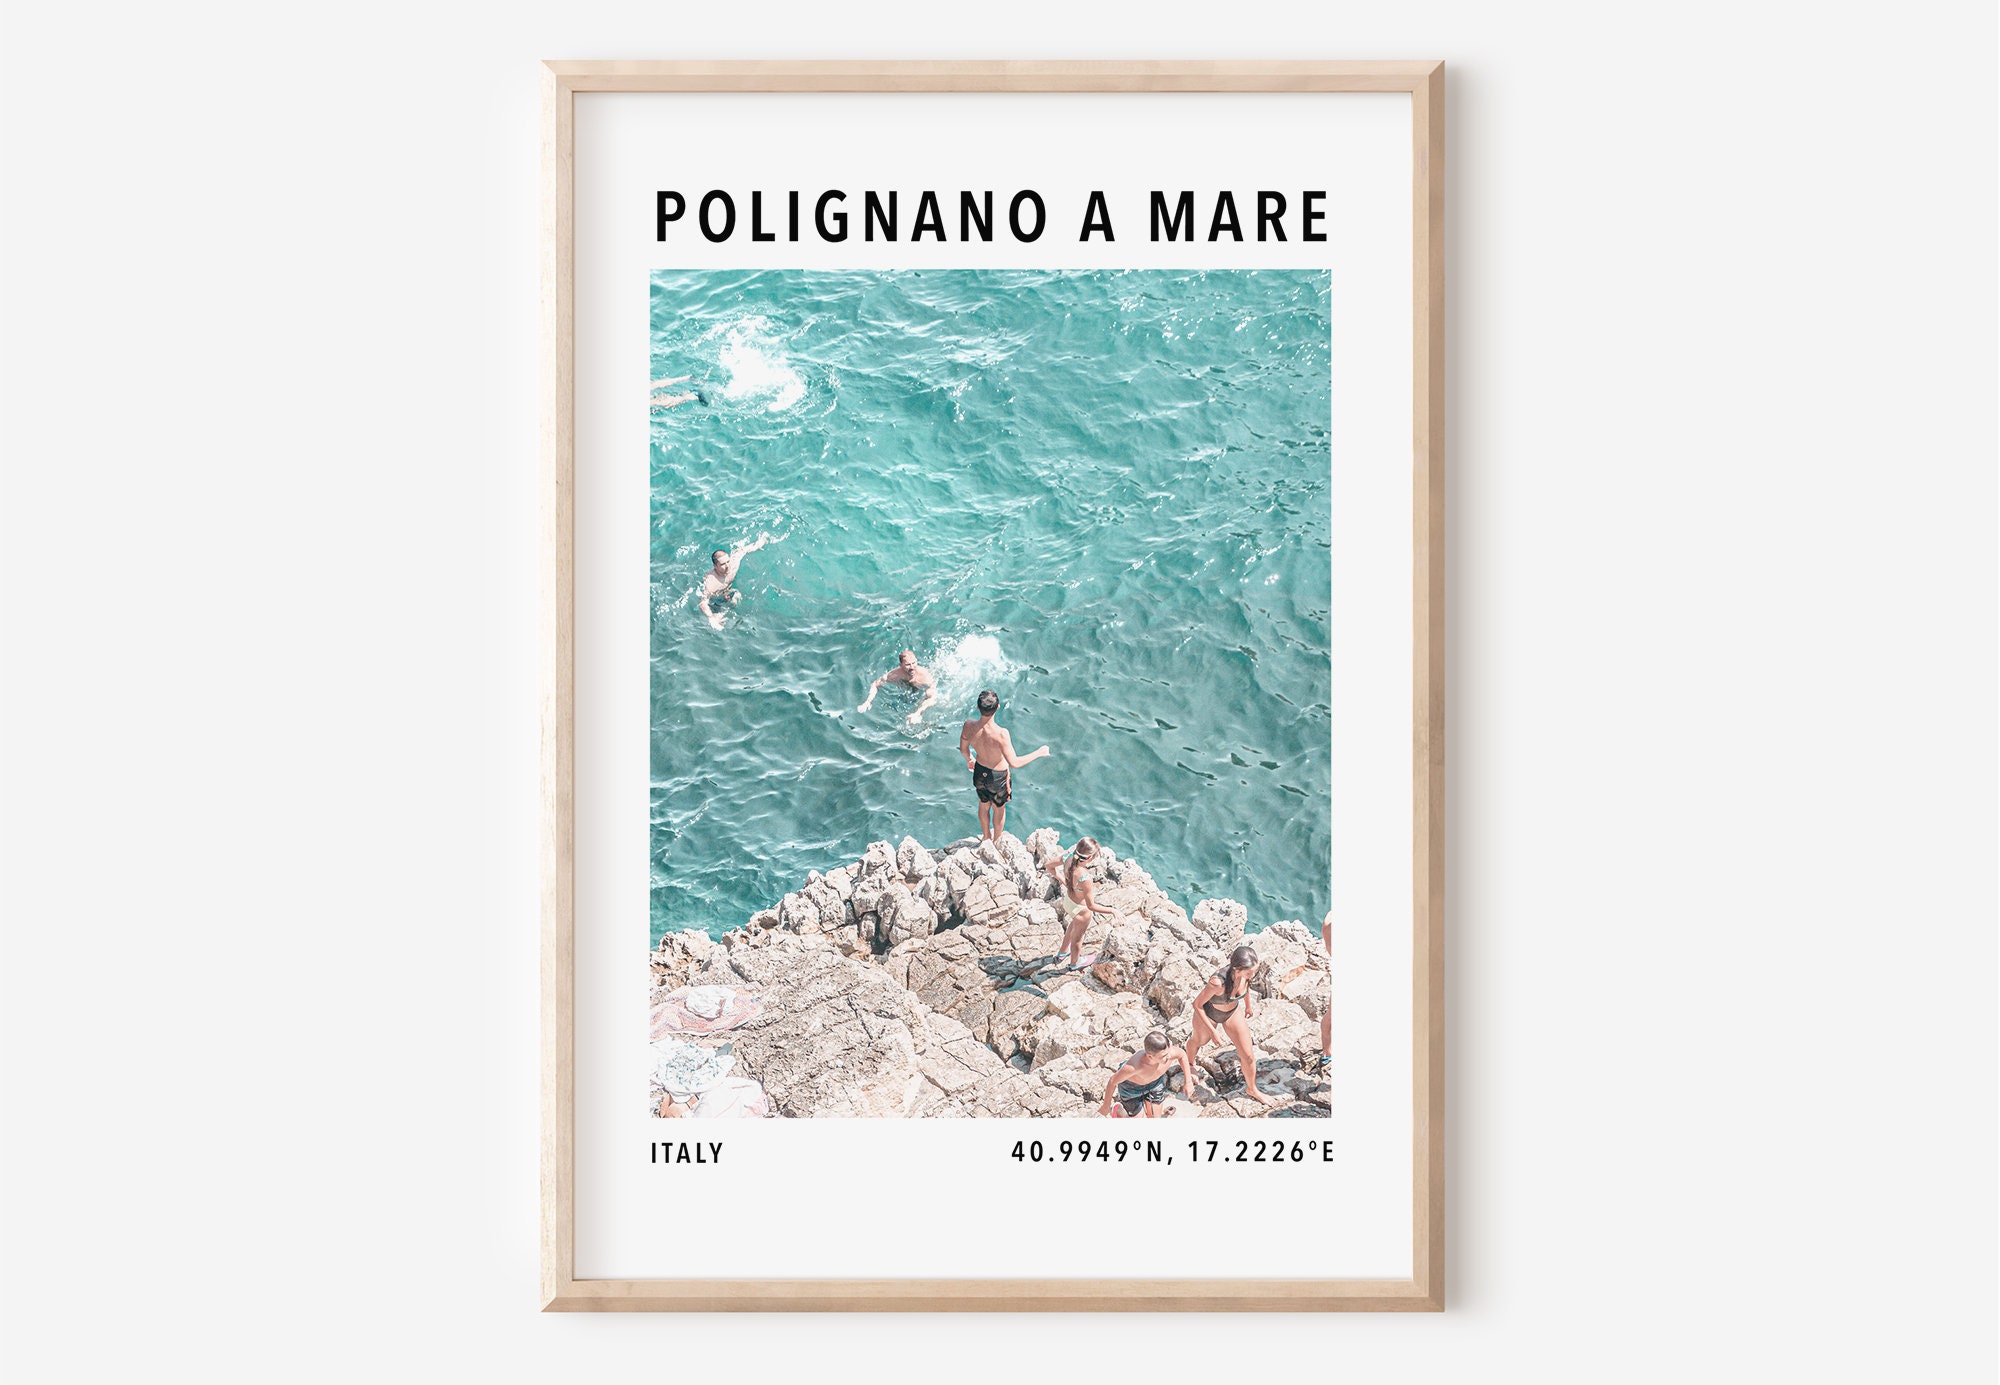 Polignano a mare Reiseplakat, Apulien Italien Fotografie, Italien Poster,  Mediterrane Wandkunst, Küstenwandkunst, Italienisches Strandfoto - .de